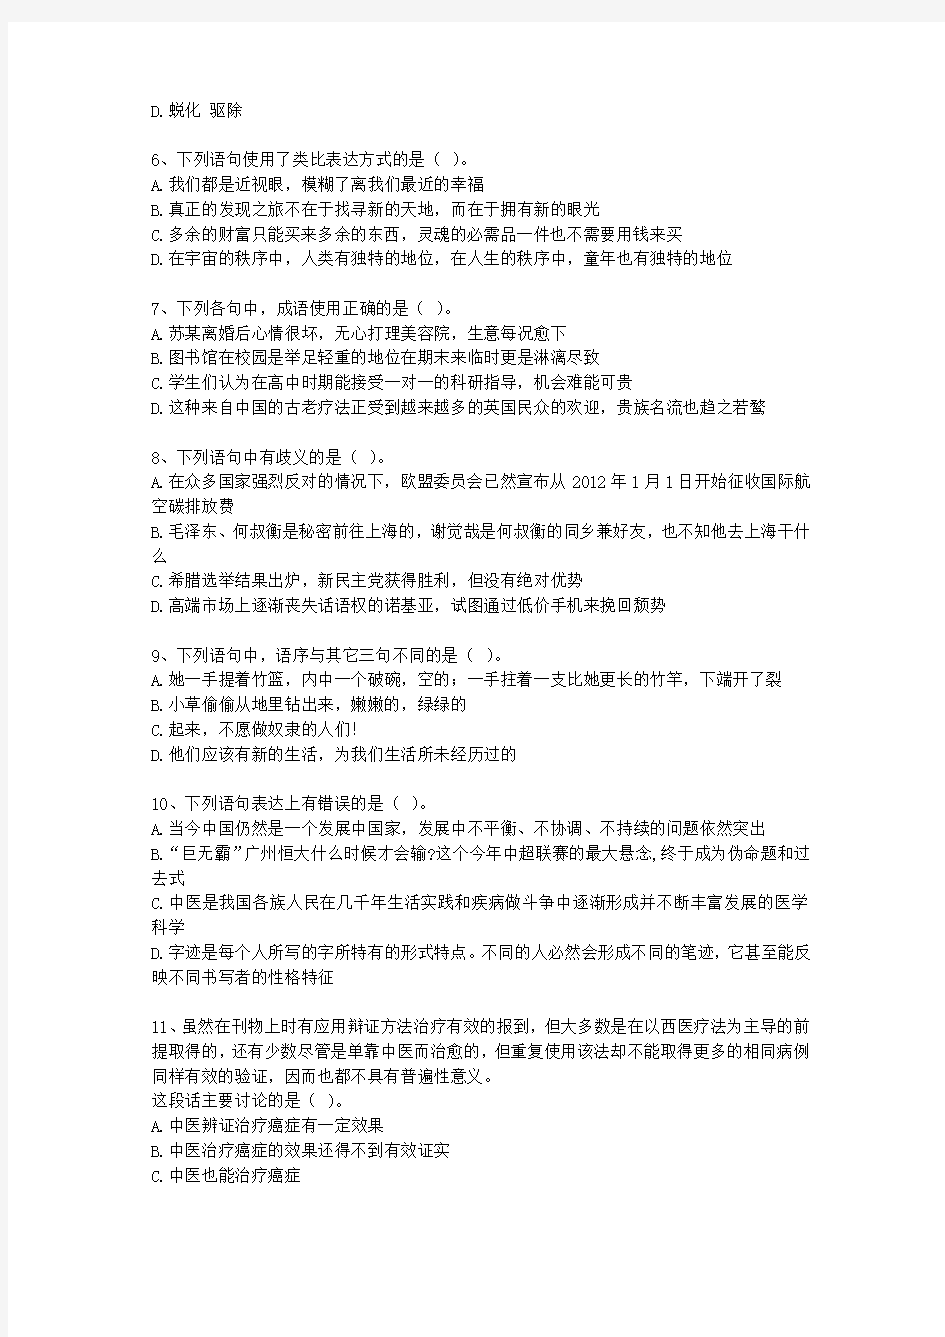 2013年上海市公务员考试《行测》真题(A类)【完整+答案+解析】